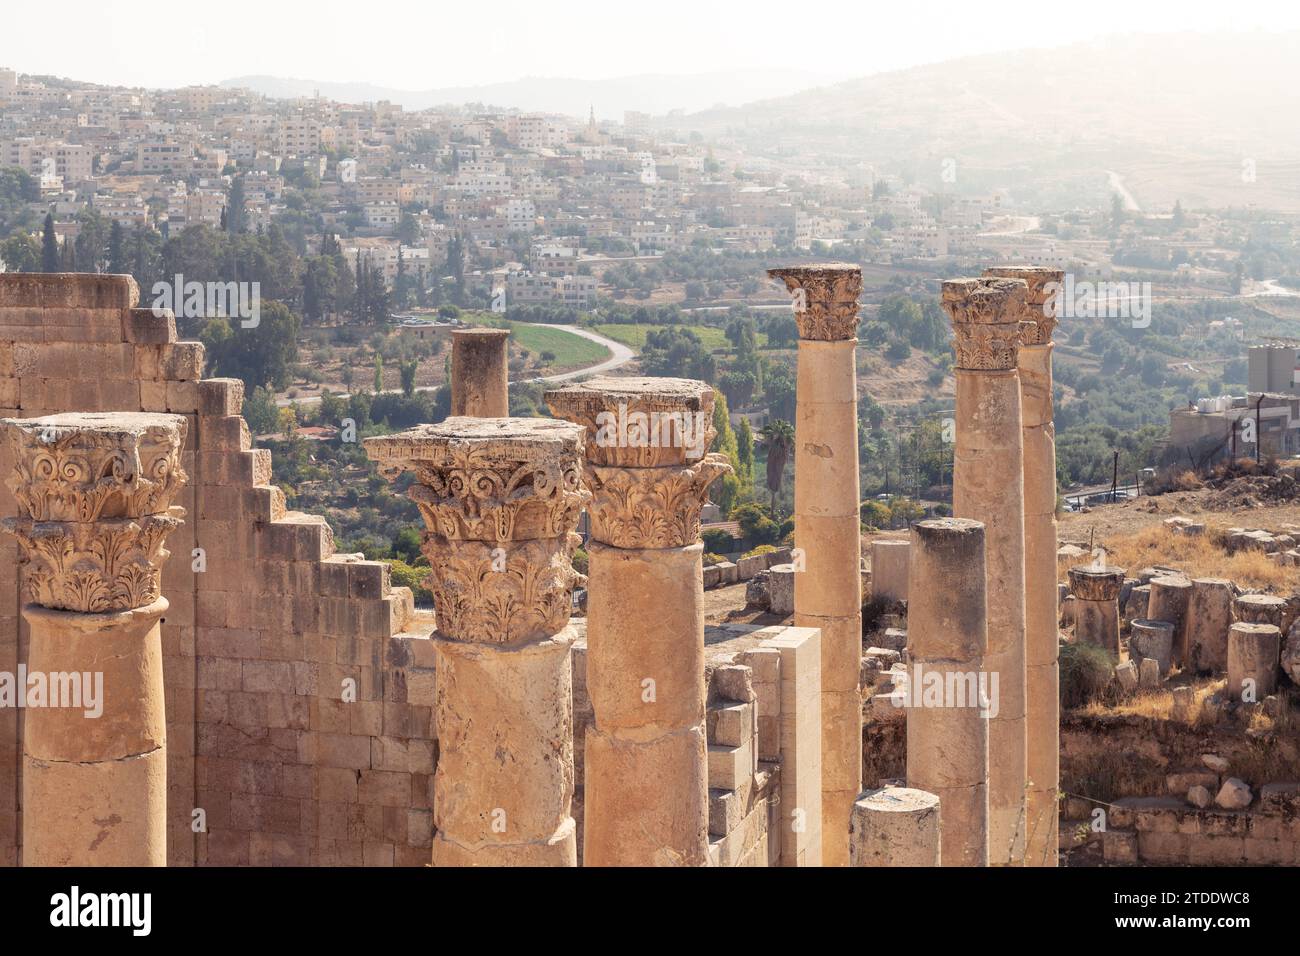 Anciennes ruines romaines de Jerash, avec le paysage urbain derrière Banque D'Images